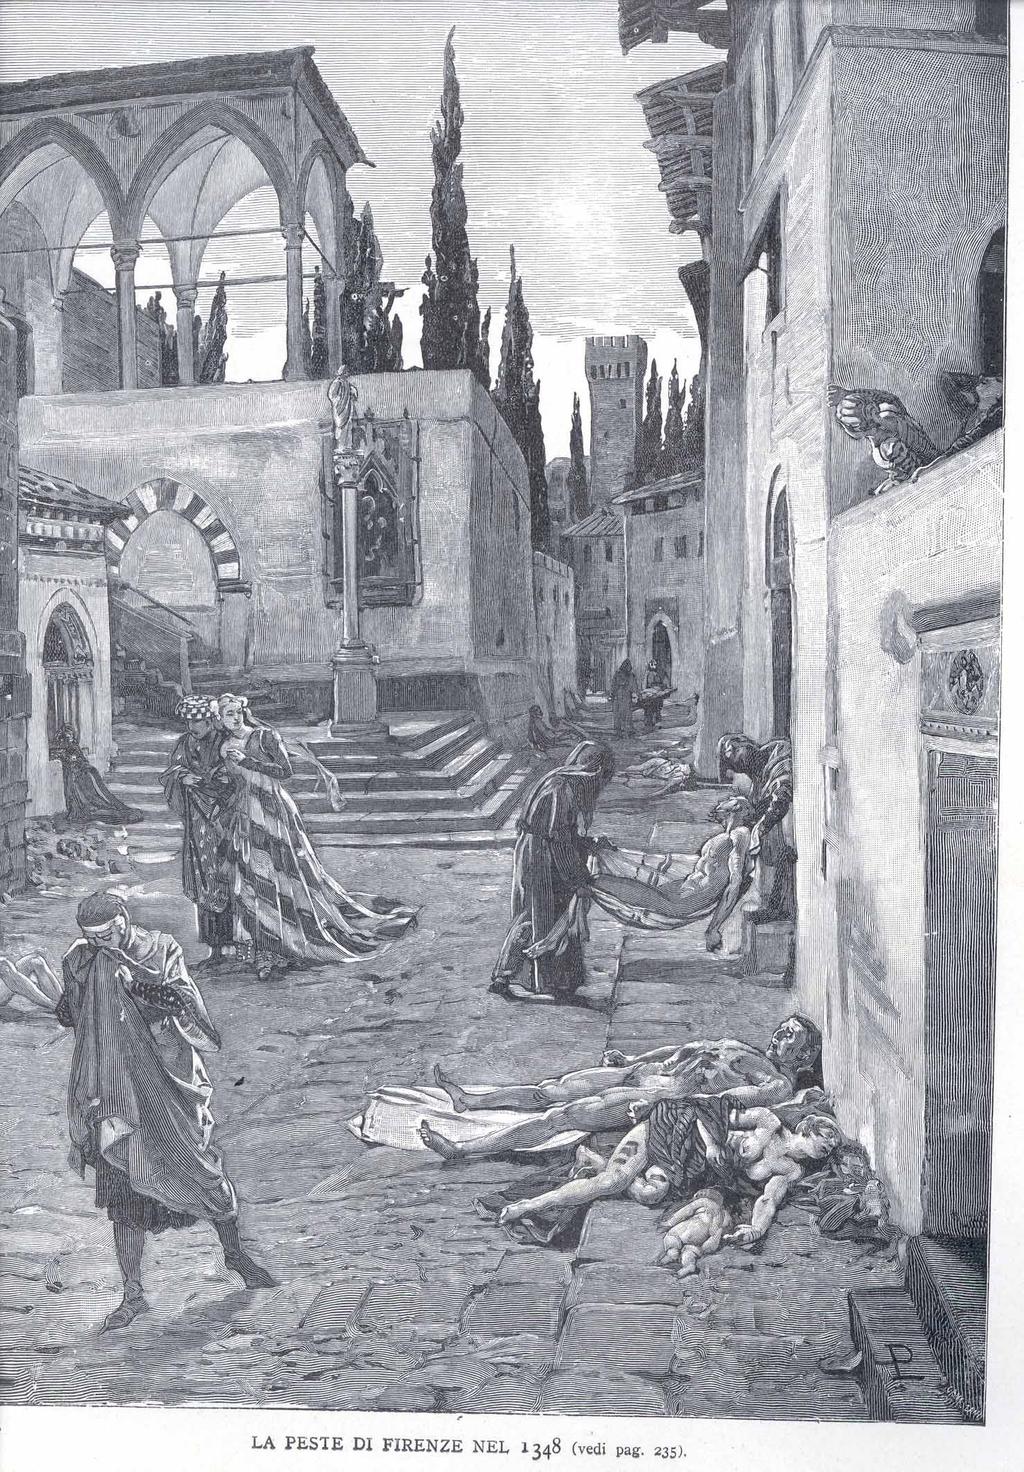 Şekil 1.2. Floransa salgını (1348) (http://msimonetta.web.wesleyan.edu/wescourses/2002s/ital233/01/timeline/ marcello3.